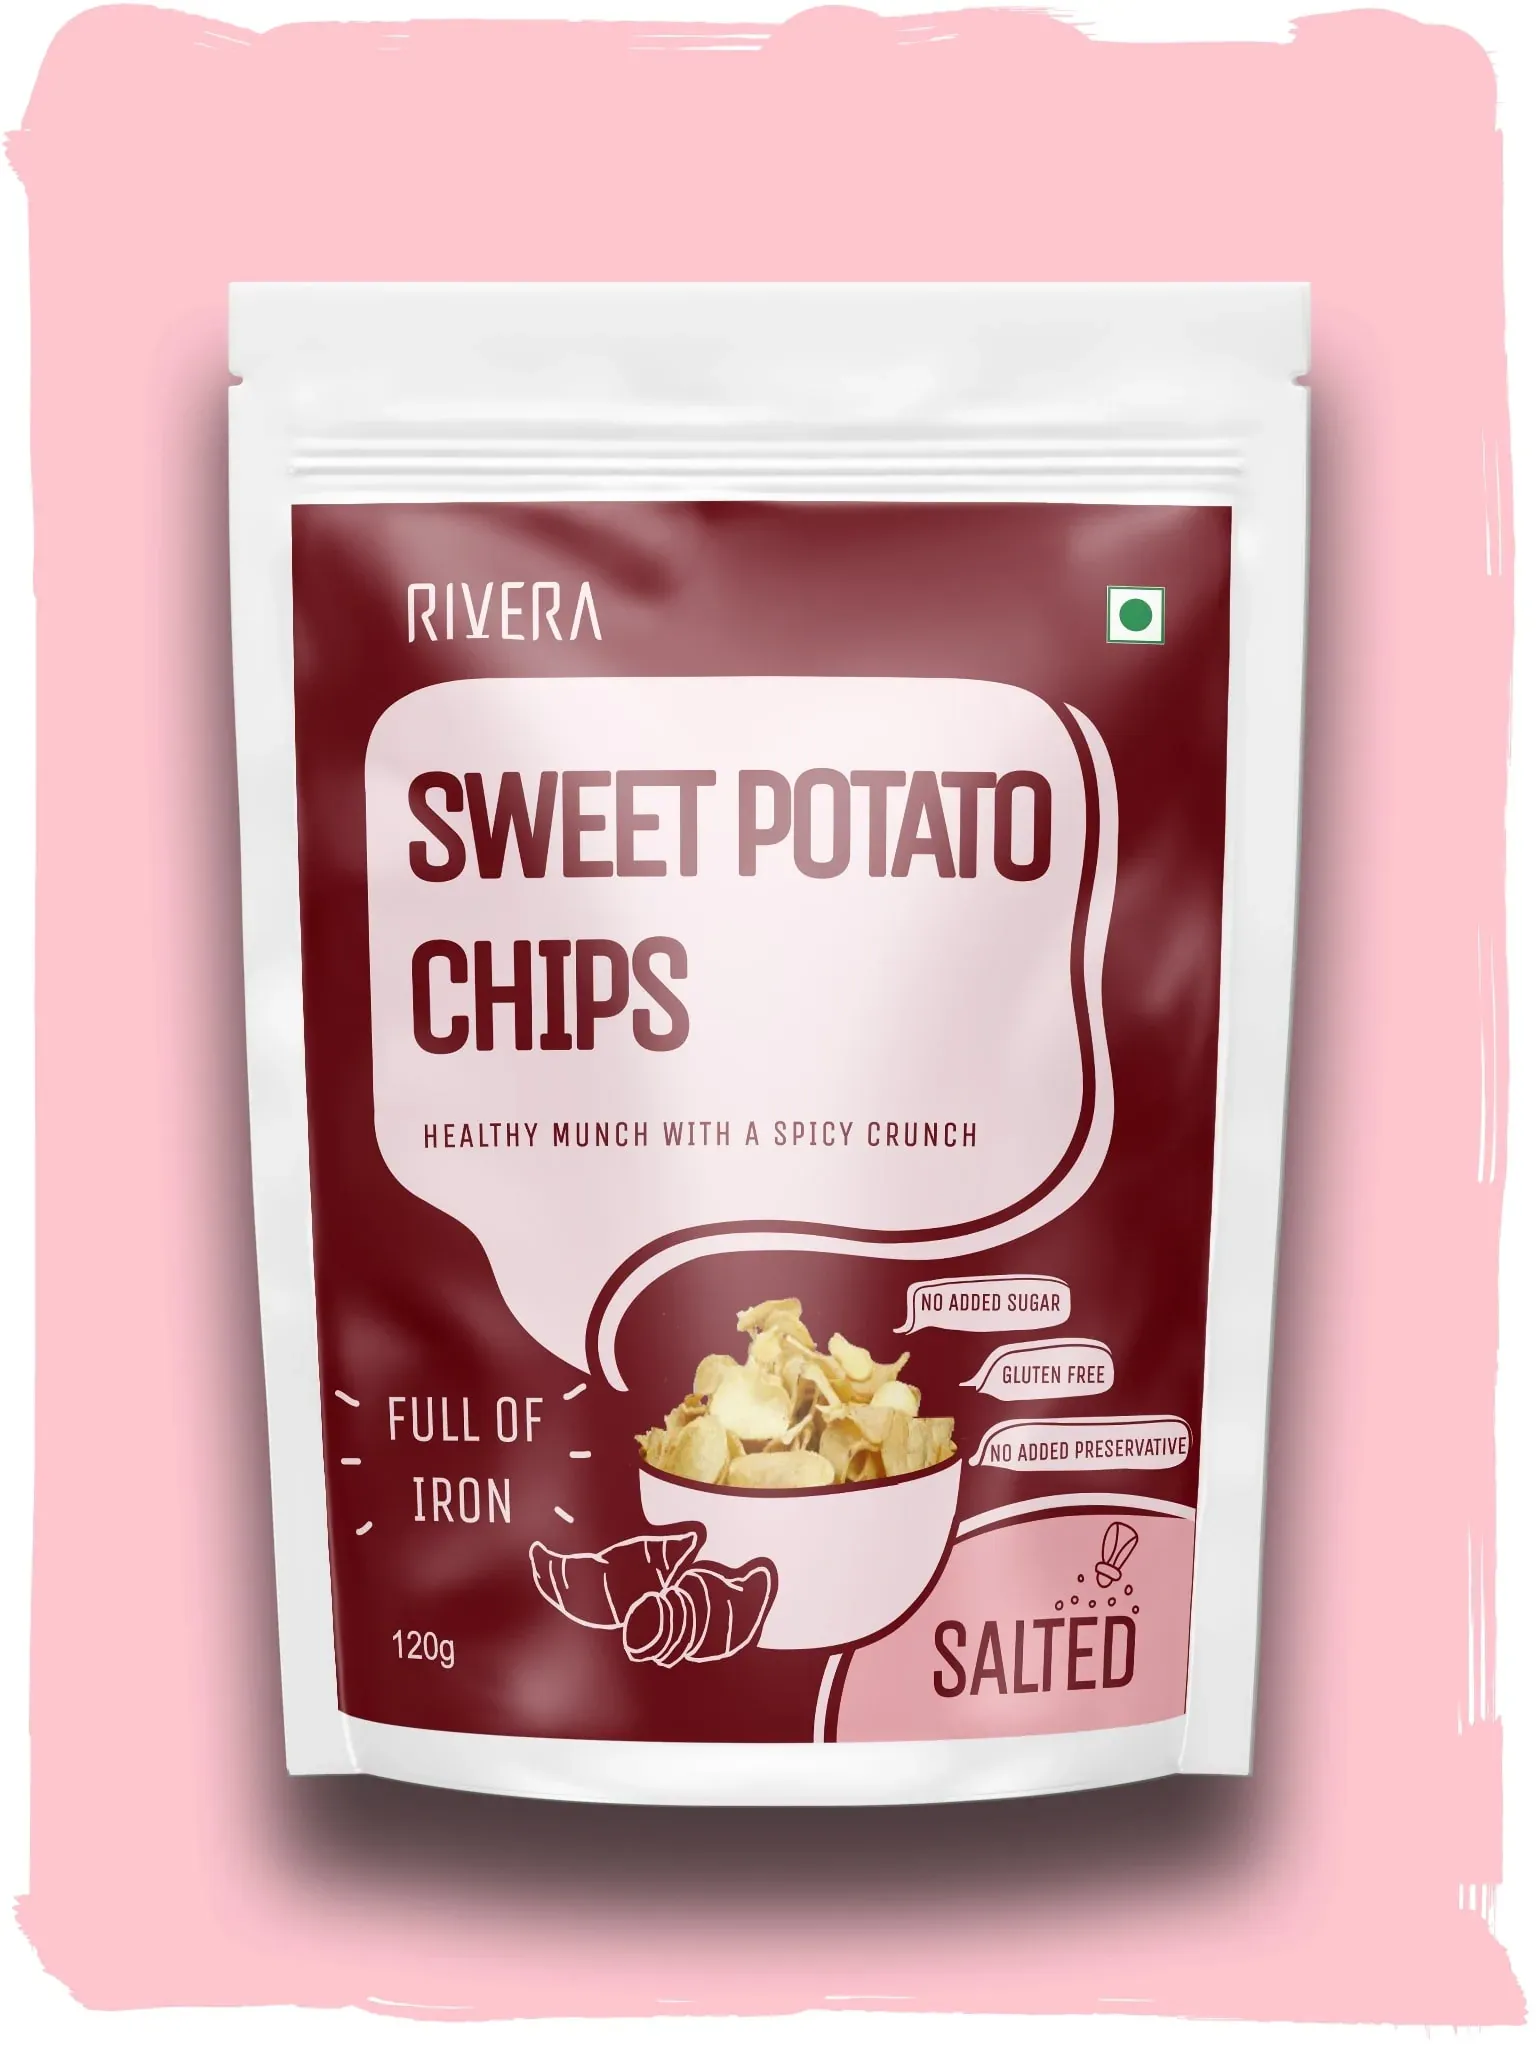 Rivera Sweet Potato Chips Image